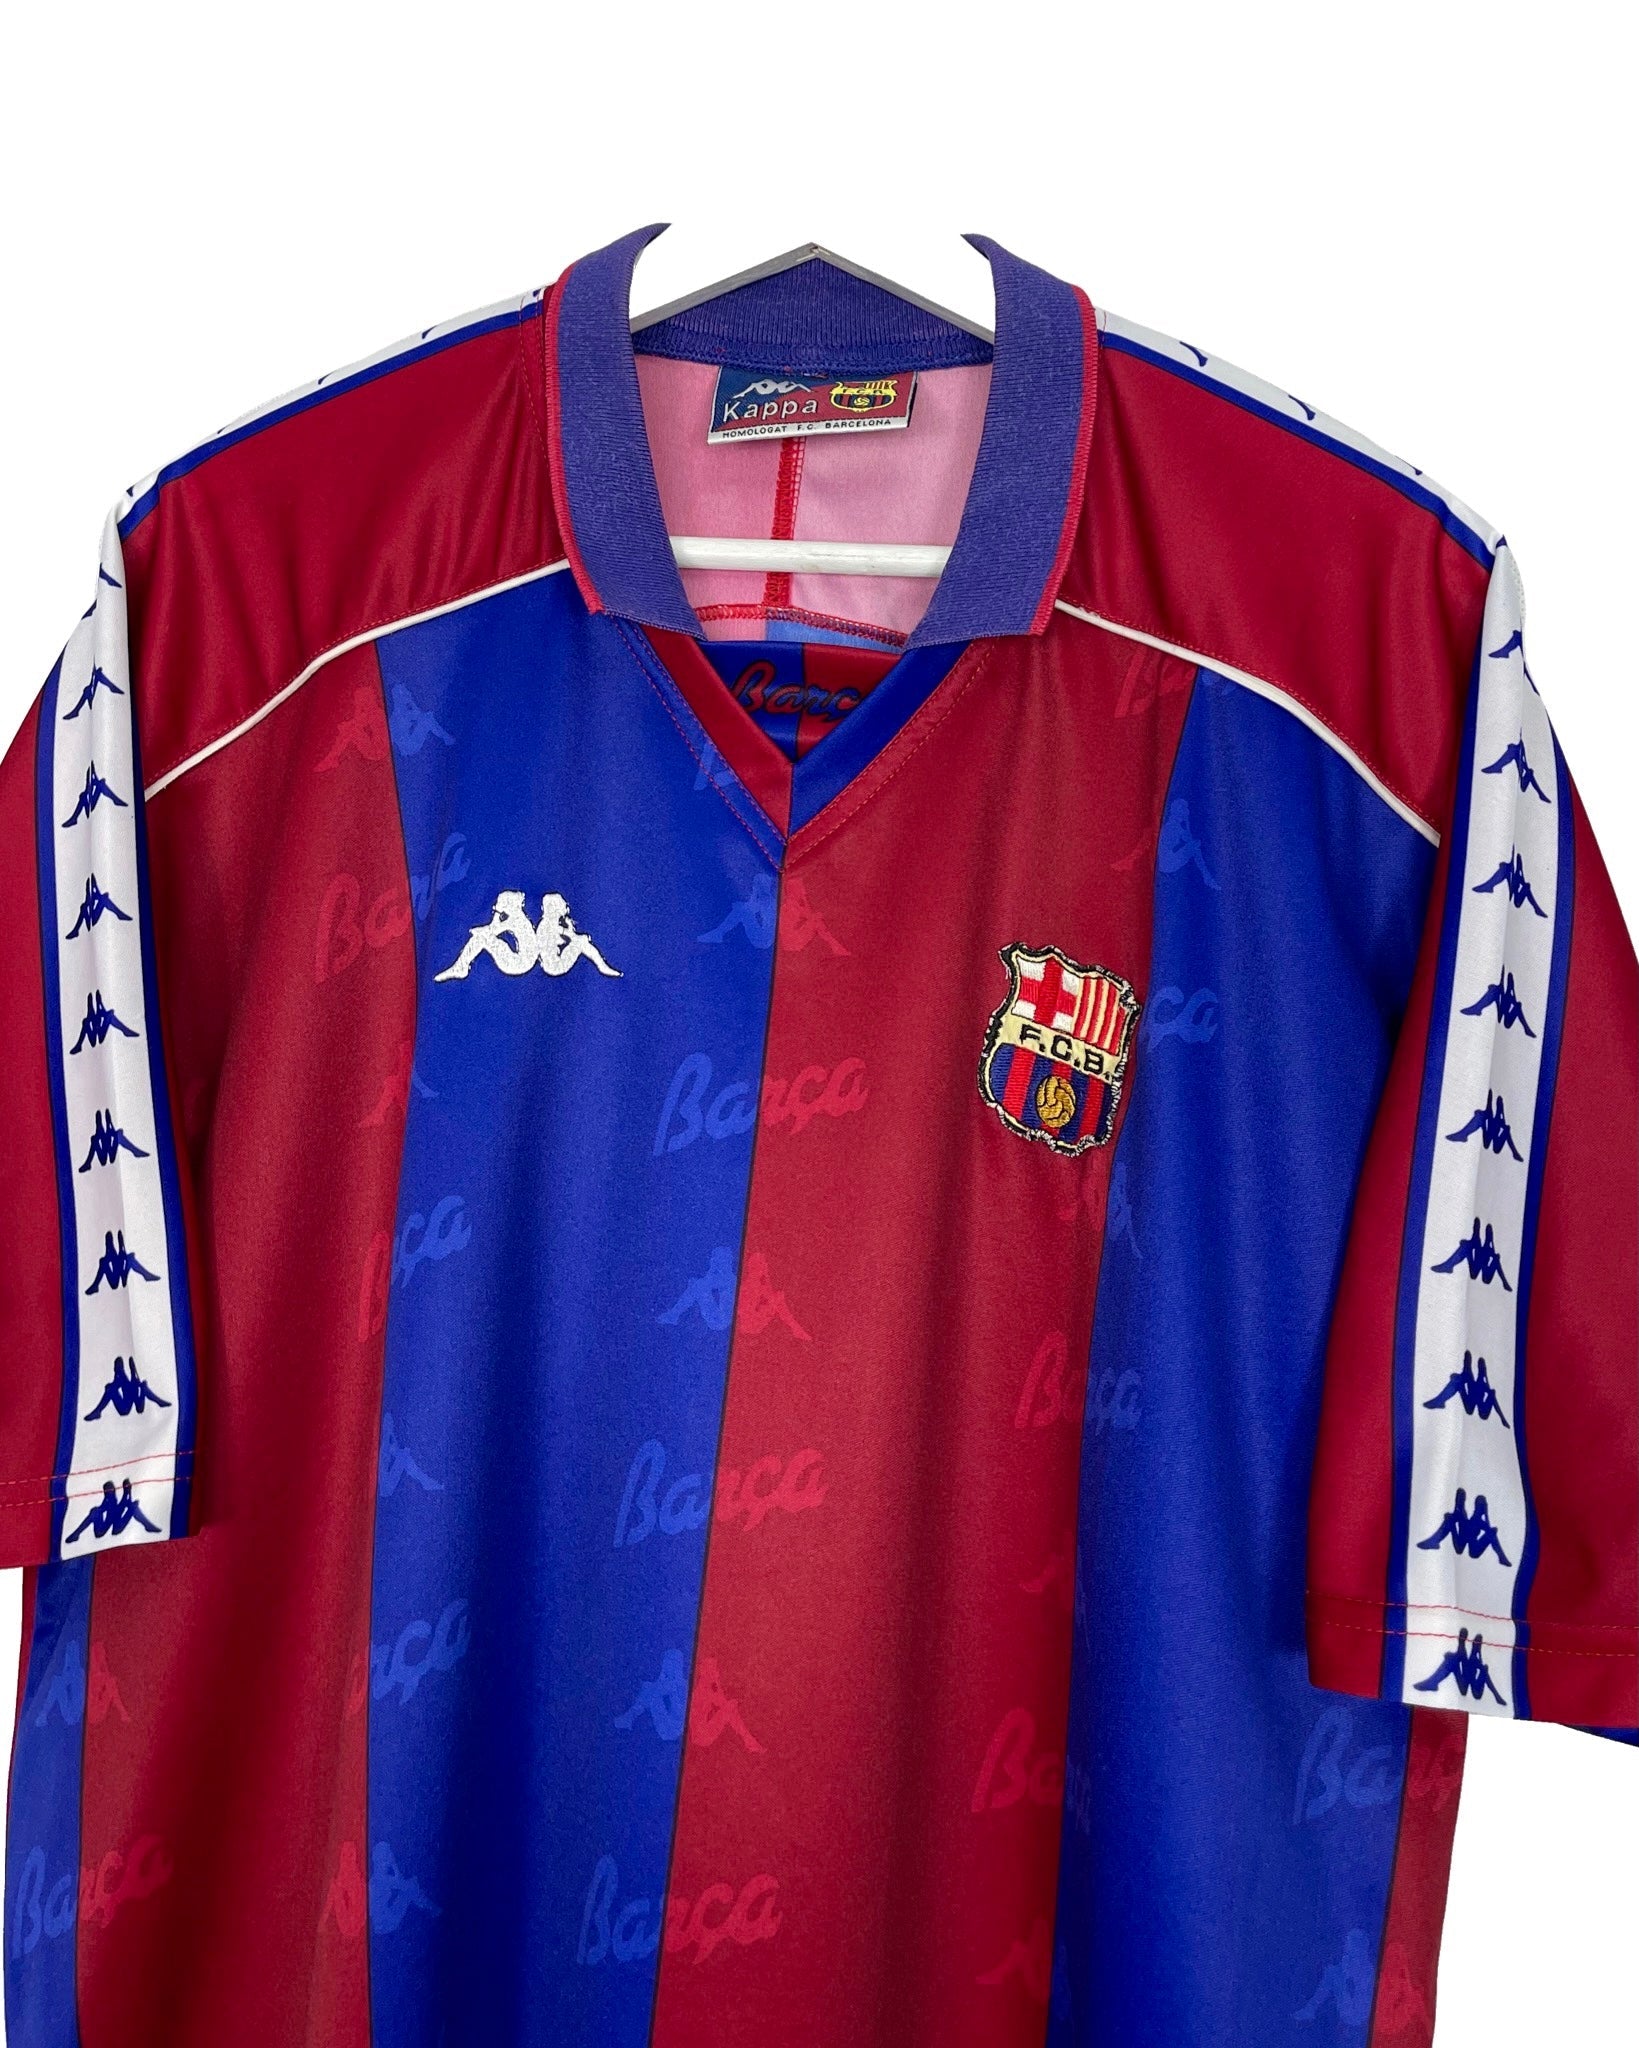  Maillot de football Kappa Maillot de football - FC Barcelona 92' 95' - XL - PLOMOSTORE